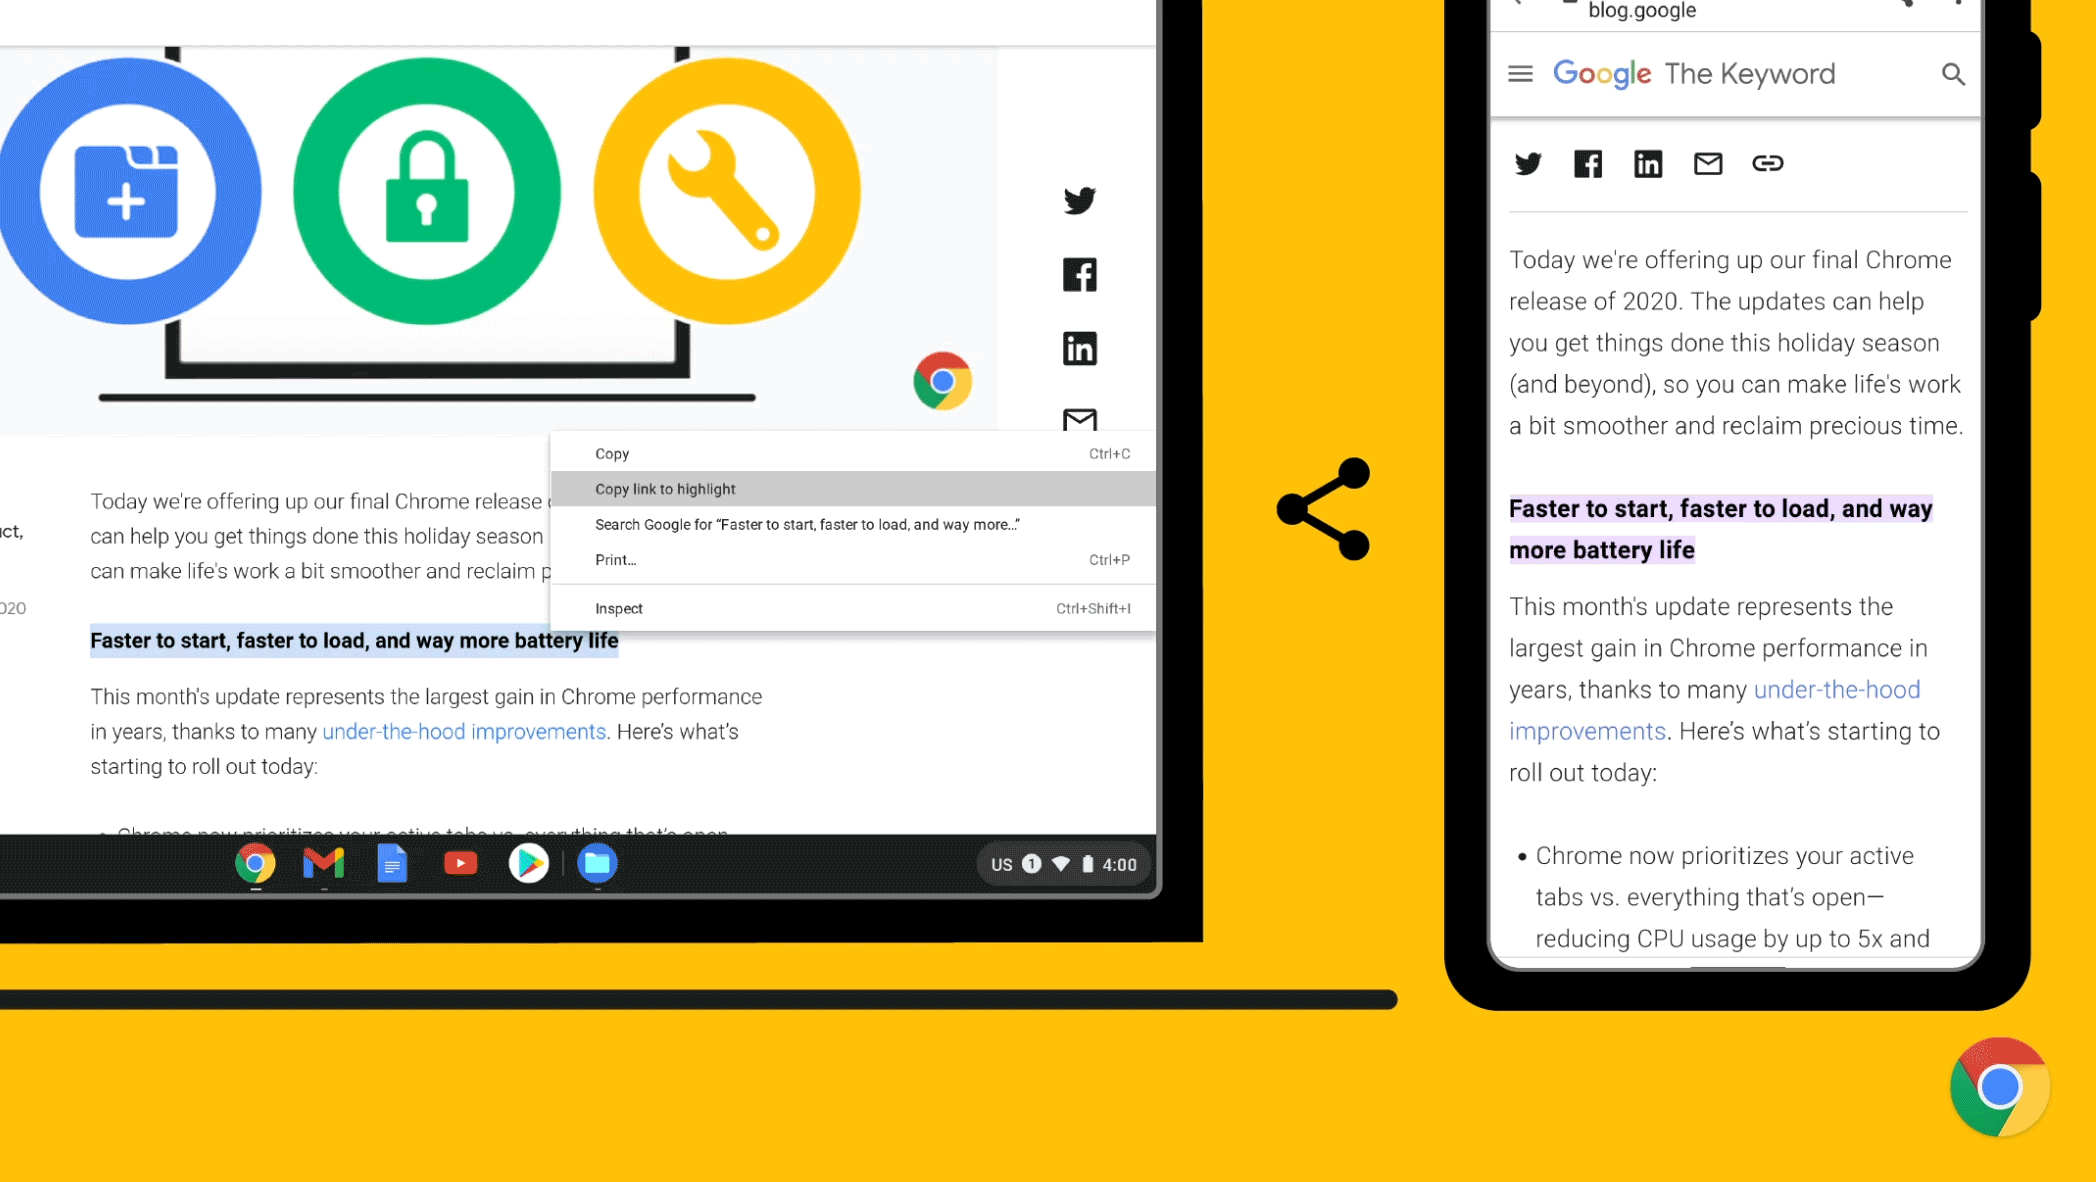 谷歌官方推介Chrome 90亮点功能